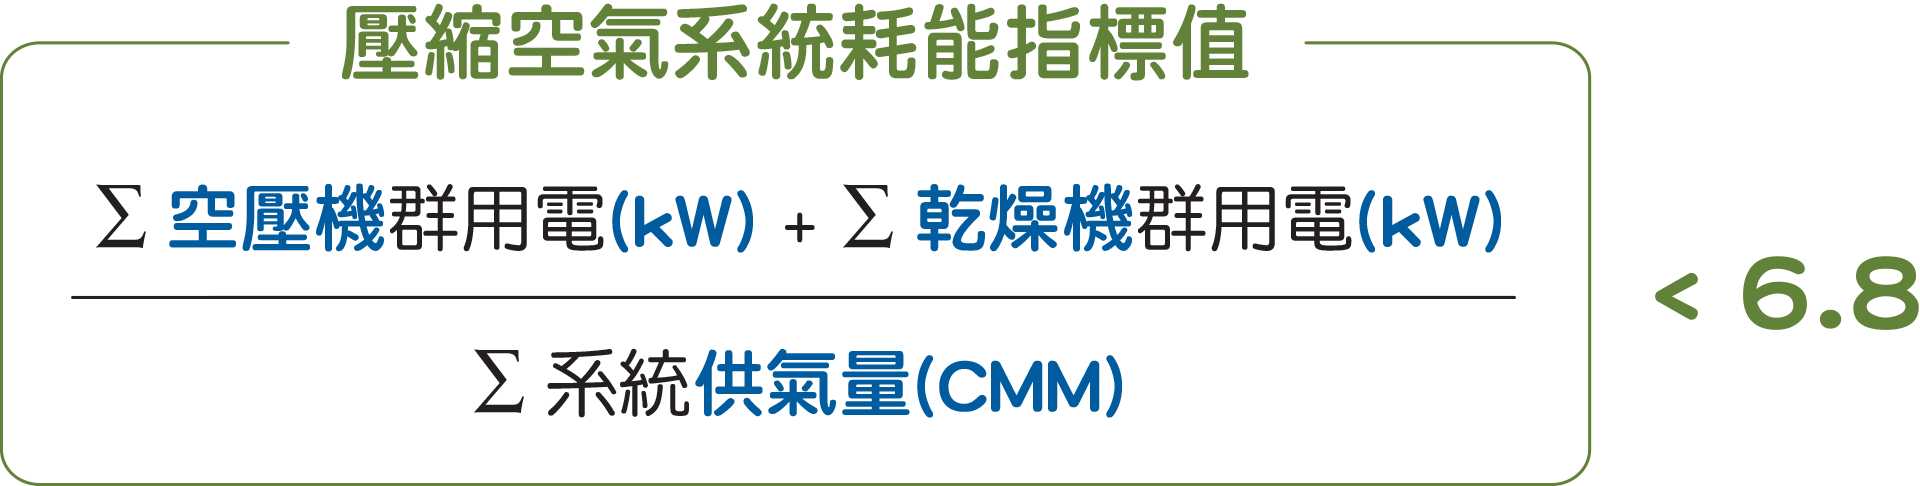 壓縮空氣系統耗能指標值=∑空壓機群用電(kW)+∑乾燥機群用電(kW)/∑ 系統供氣量(CMM)